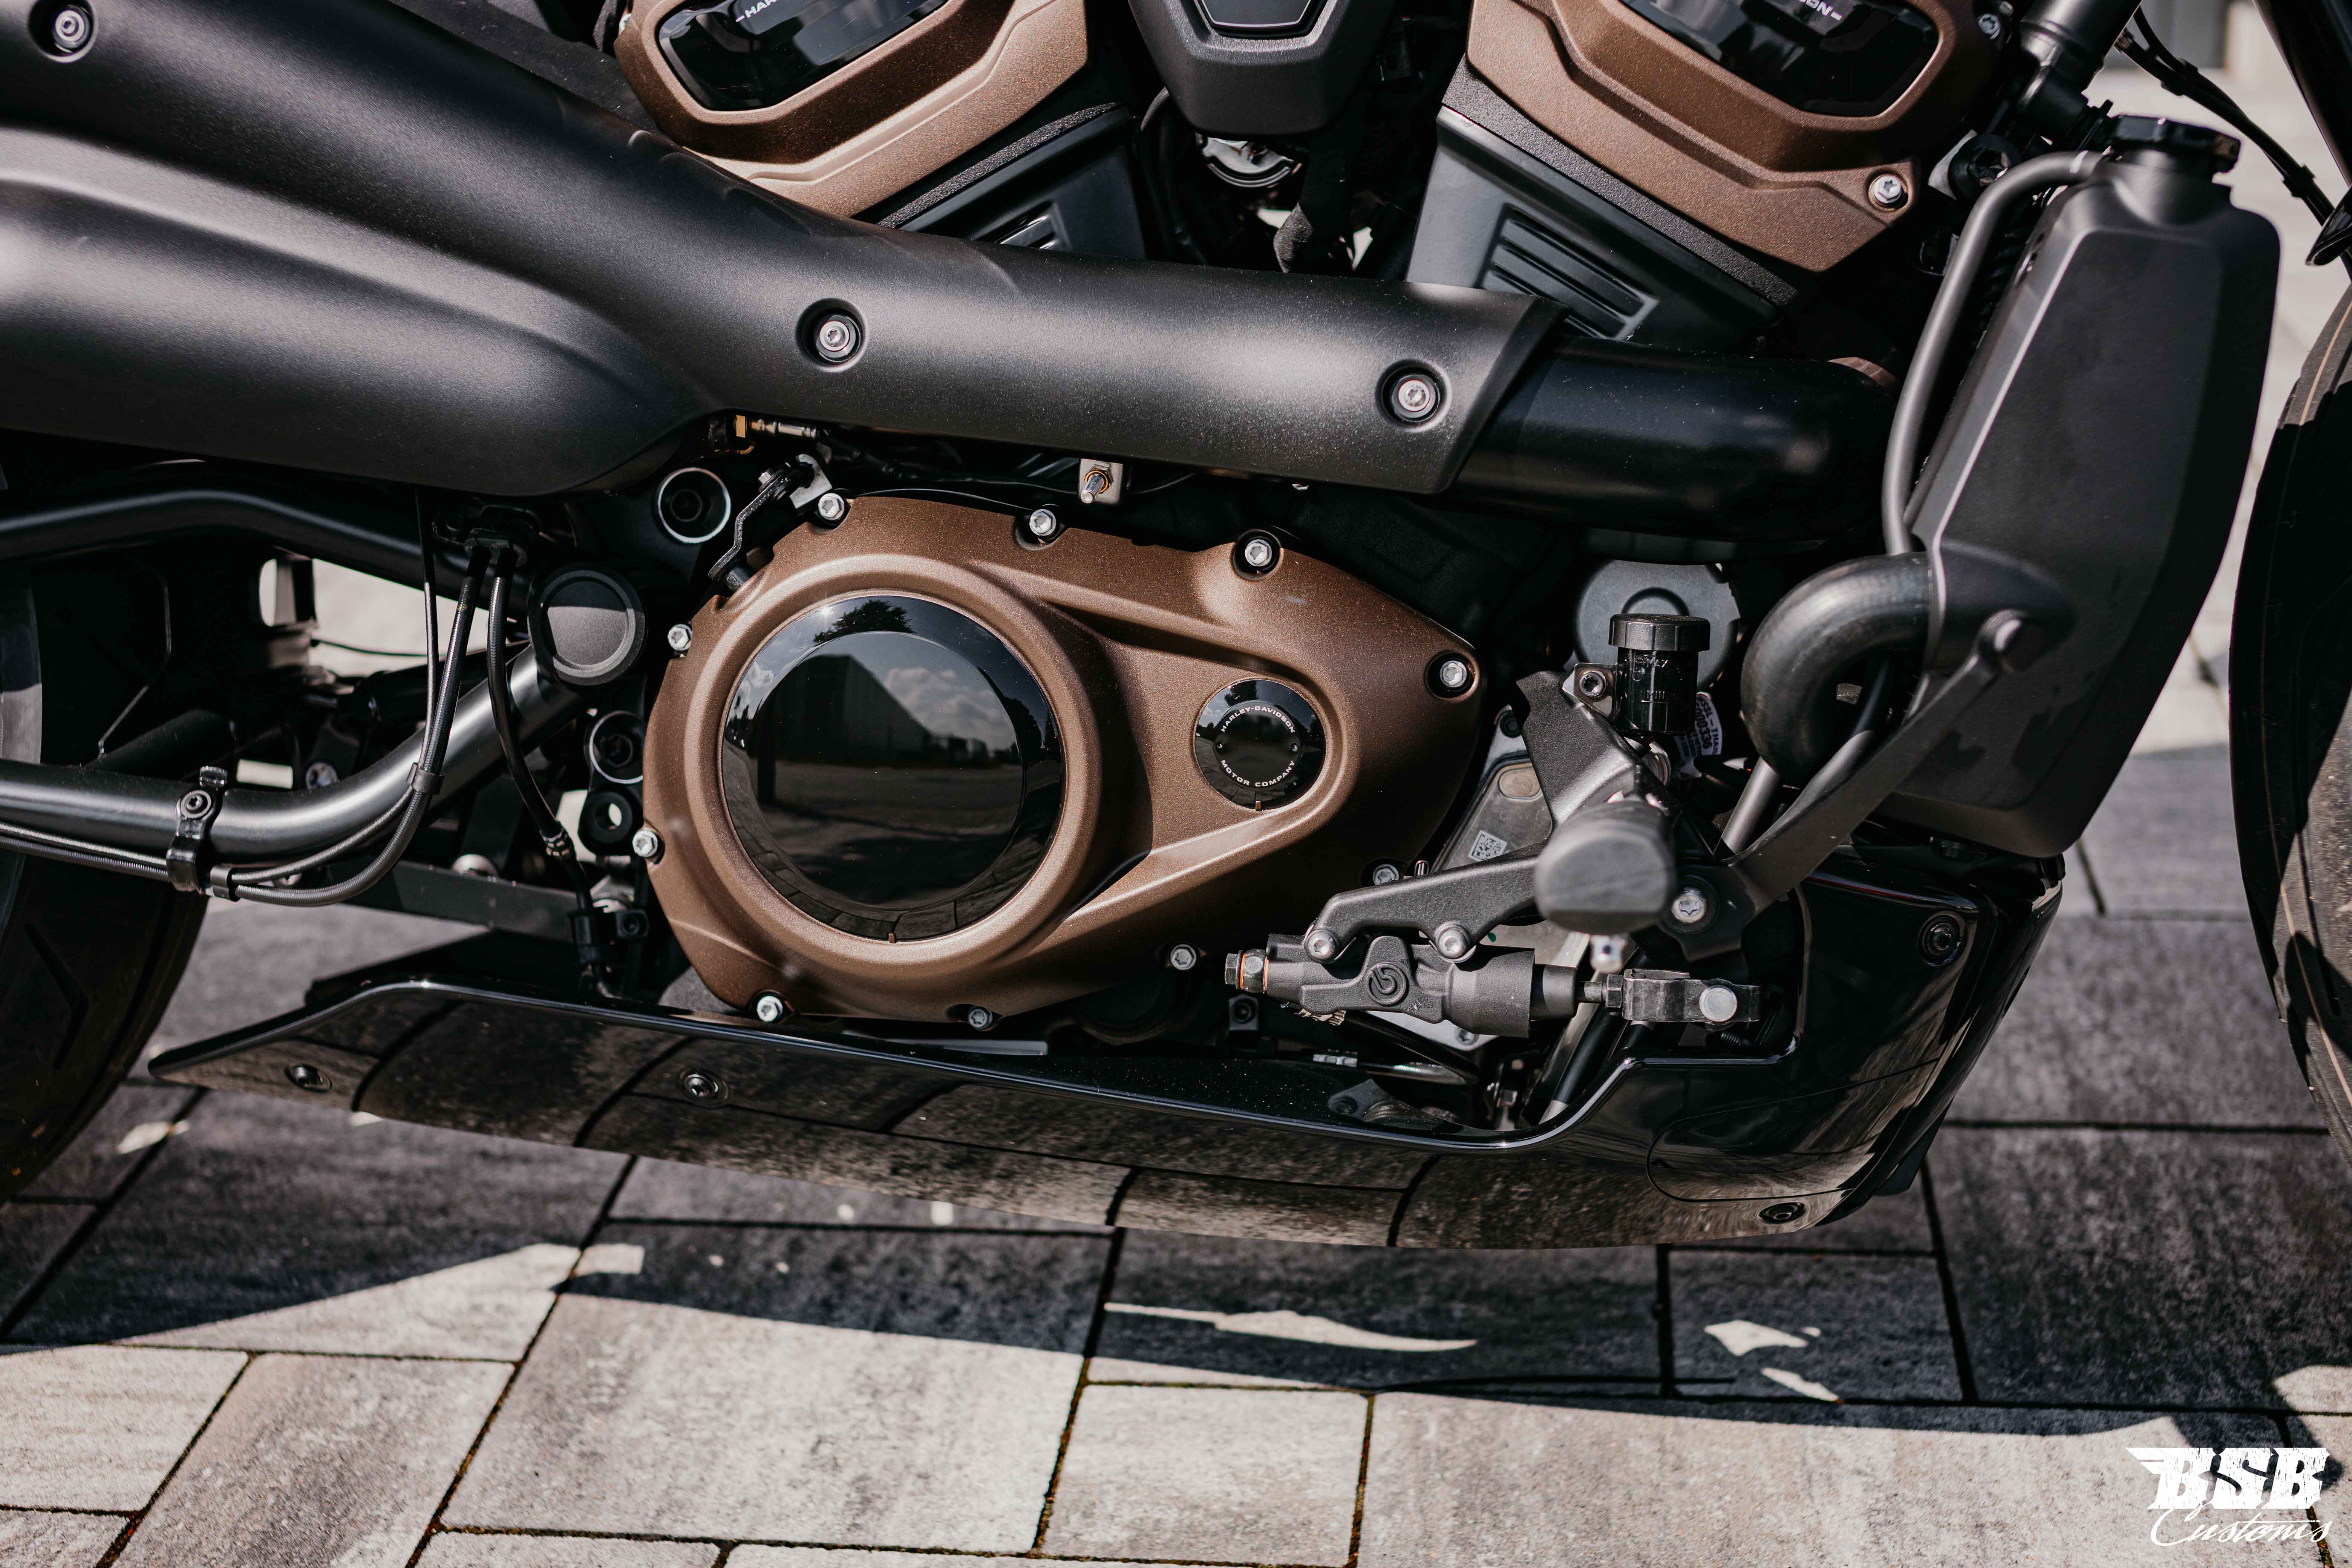 2022 Harley Davidson Sportster S 1252 ccm 90 kw volle Werksgarantie